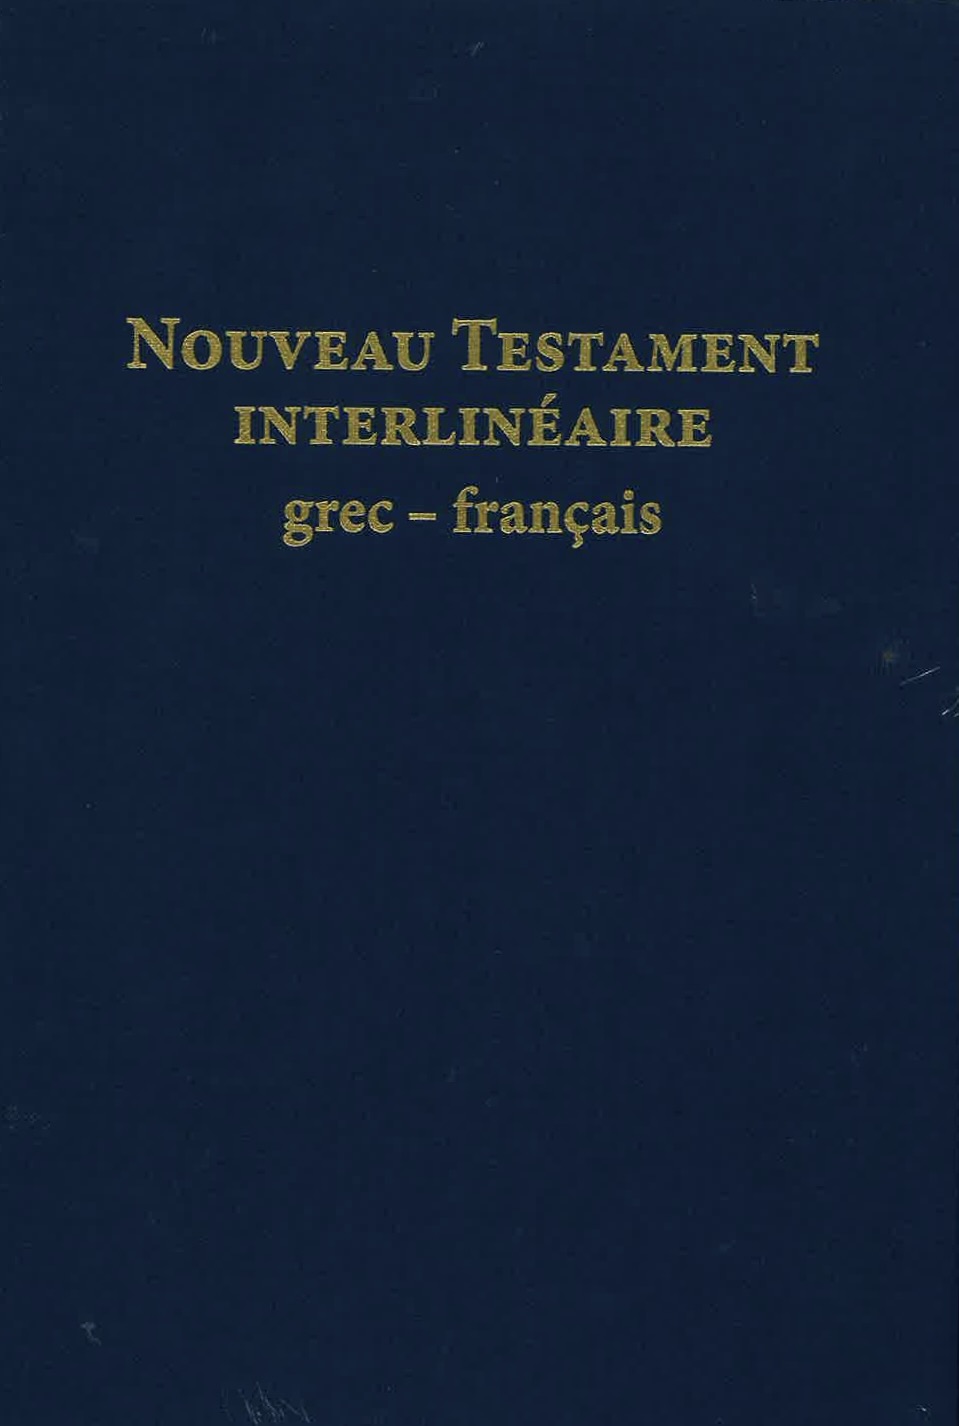 [PRA-424] Nouveau Testament Interlinéaire Grec-Français